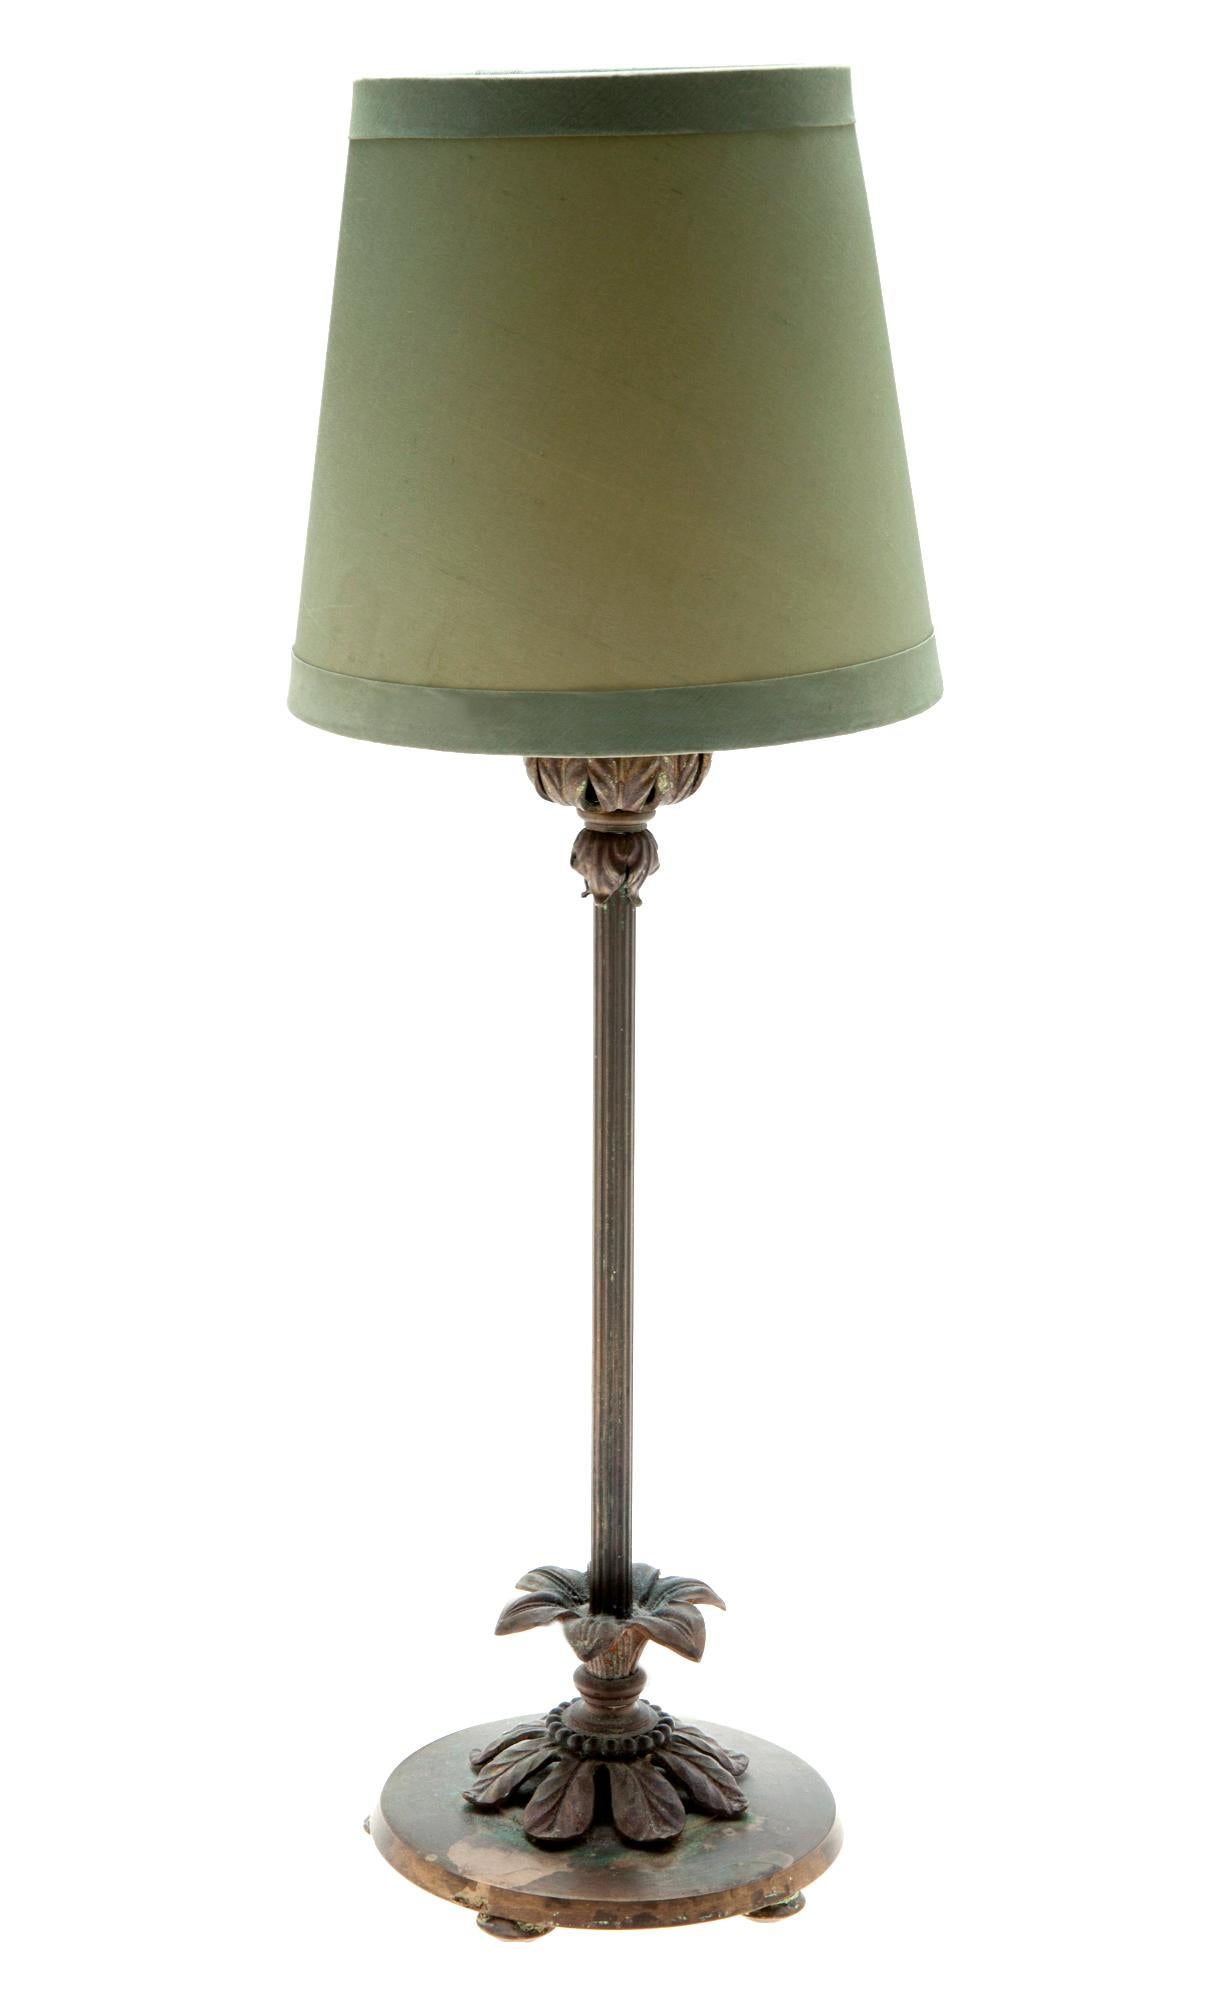 Petite lampe de boudoir, vers 1930. Tubes à cannelures, interrupteur marche-arrêt d'origine. Élevé sur 4 pieds plats. Recâblé.
Taille de l'abat-jour :
6 